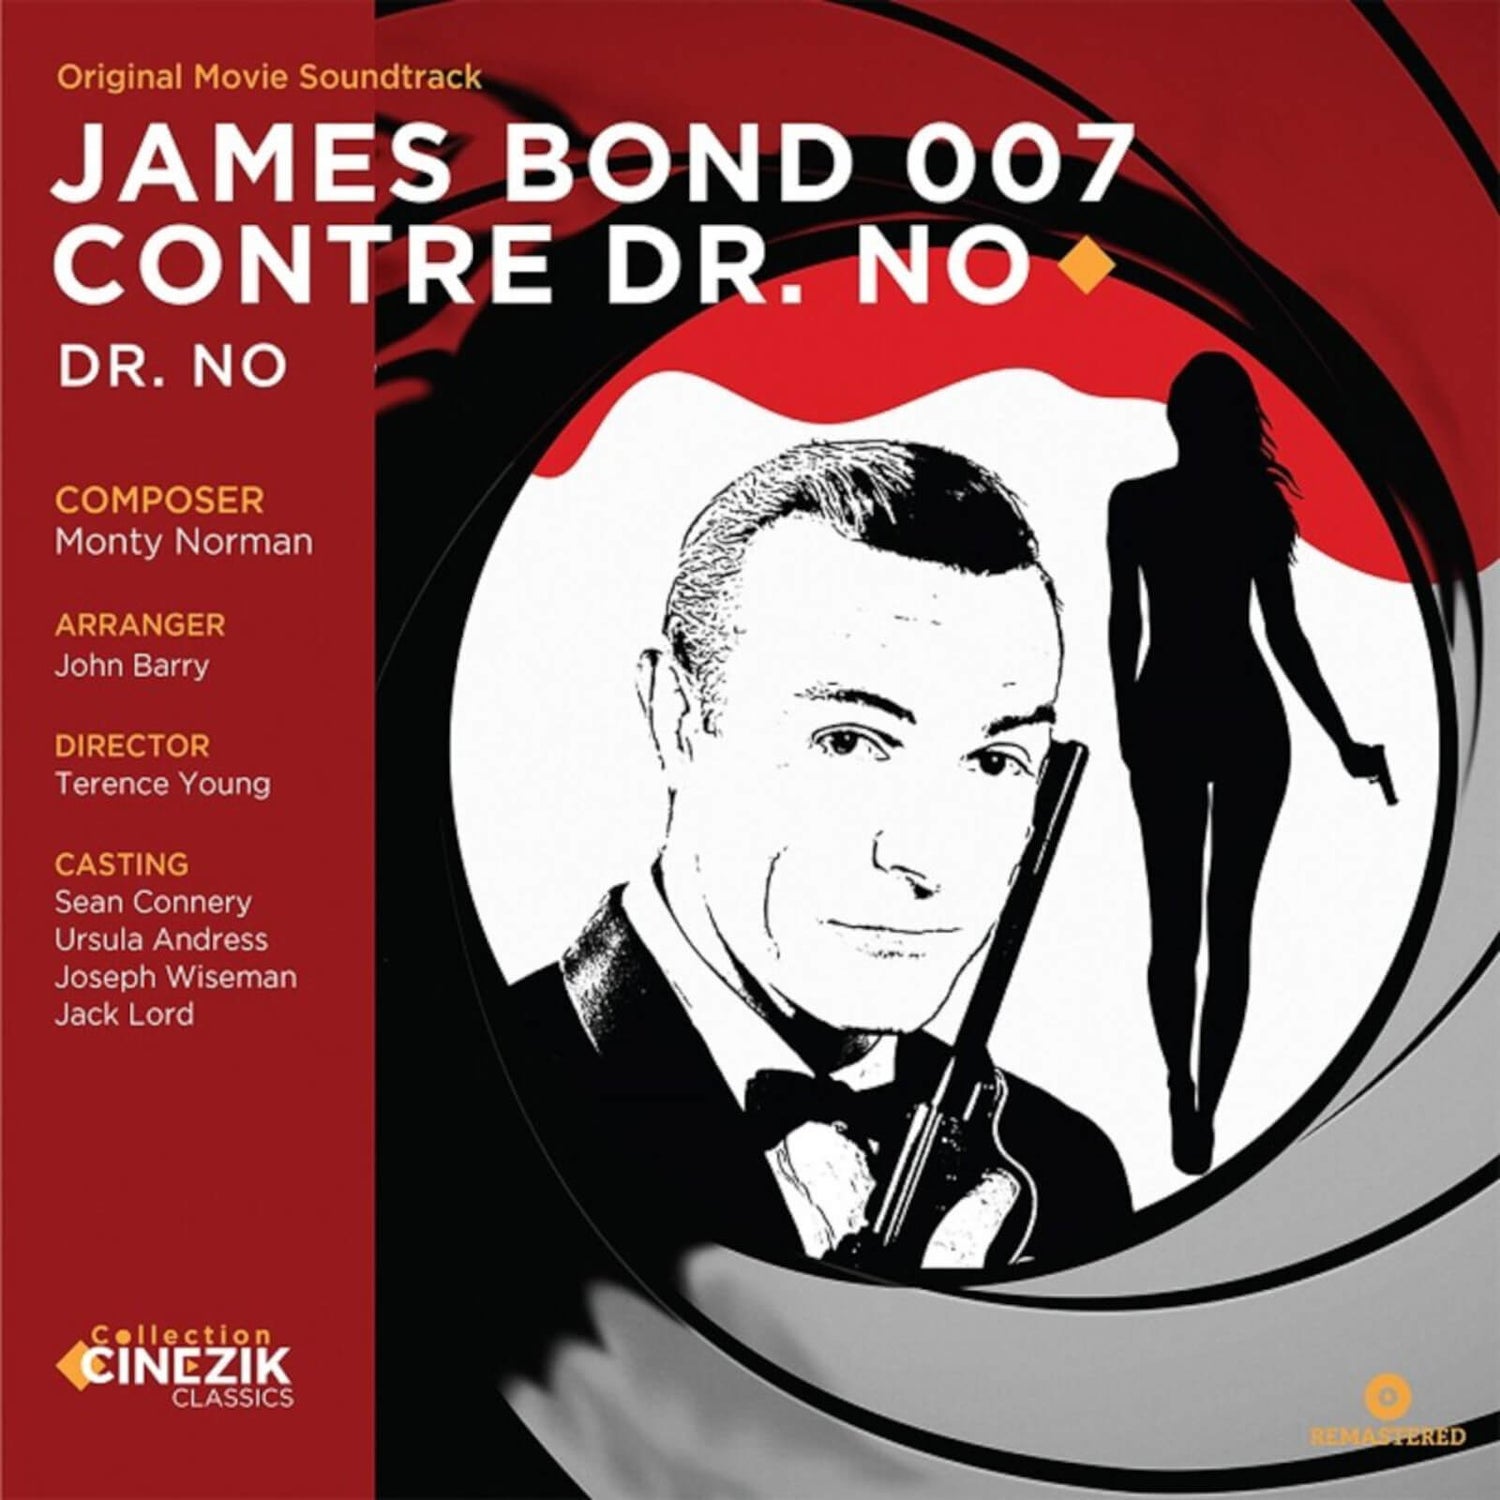 James Bond 007 Dr No Original Movie Soundtrack Vinyl